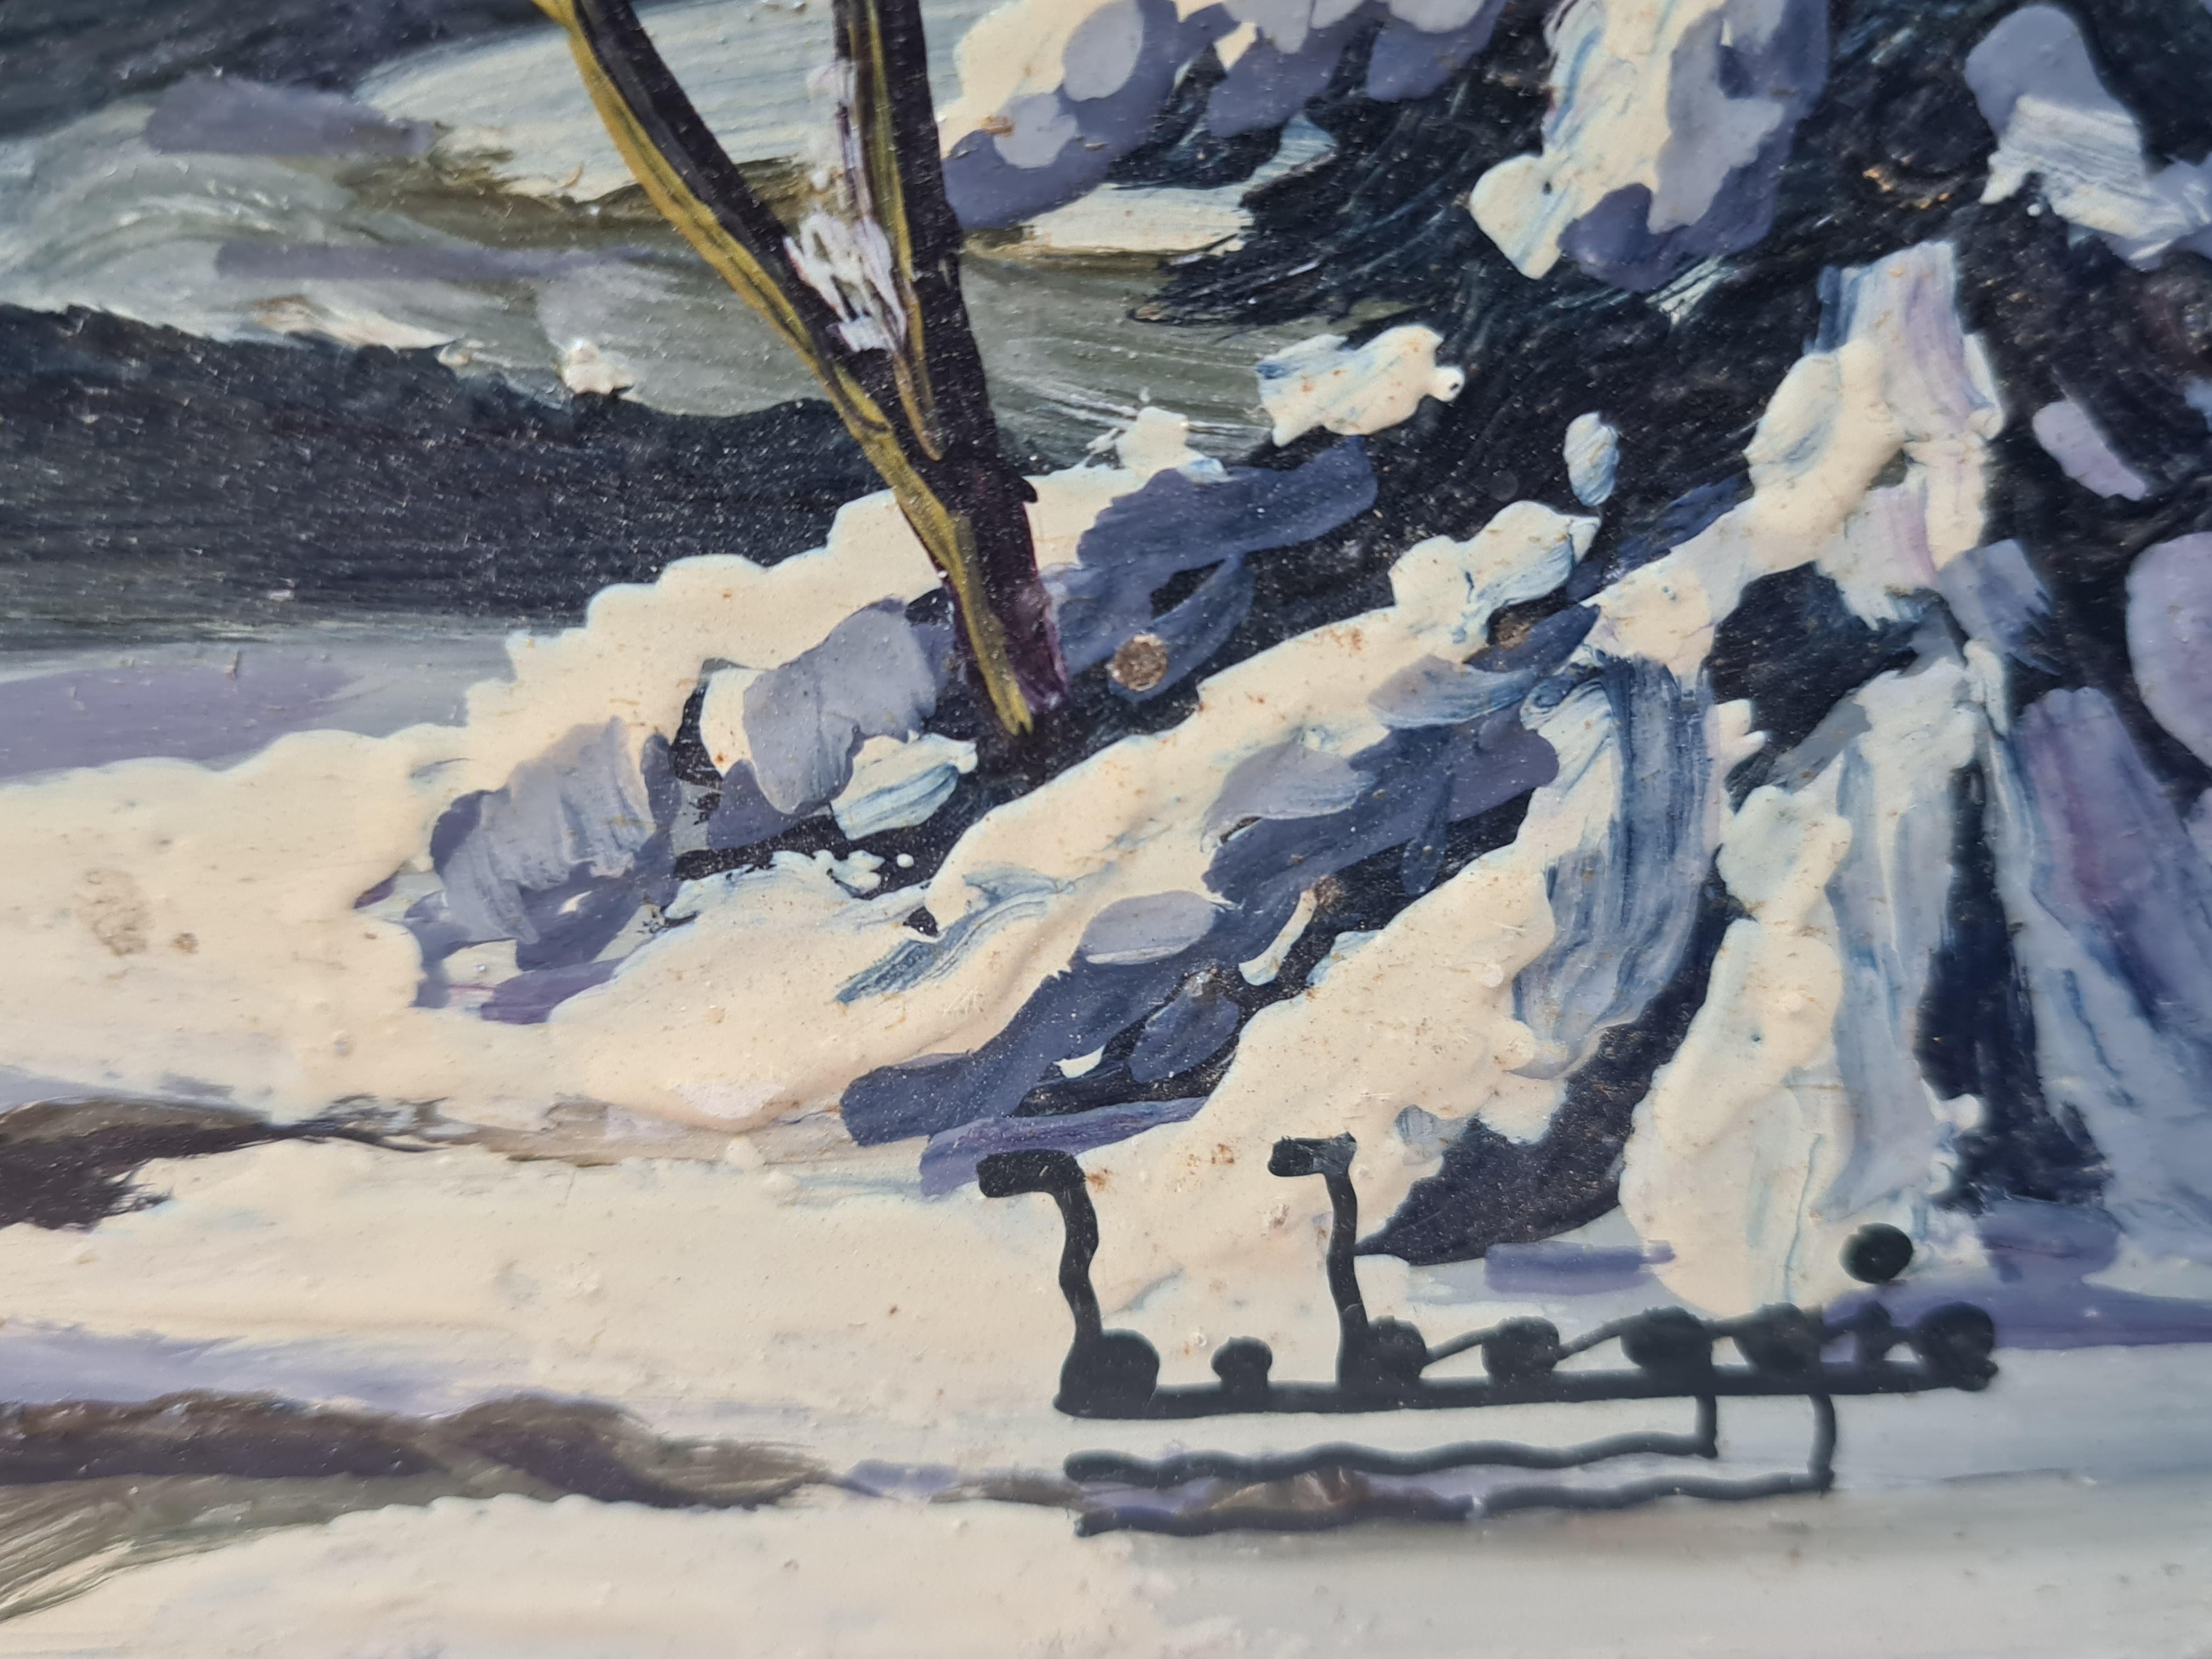 Merveilleur d'hiver de Noël, paysage de neige de l'école de Barbizon. - Painting de Boggio